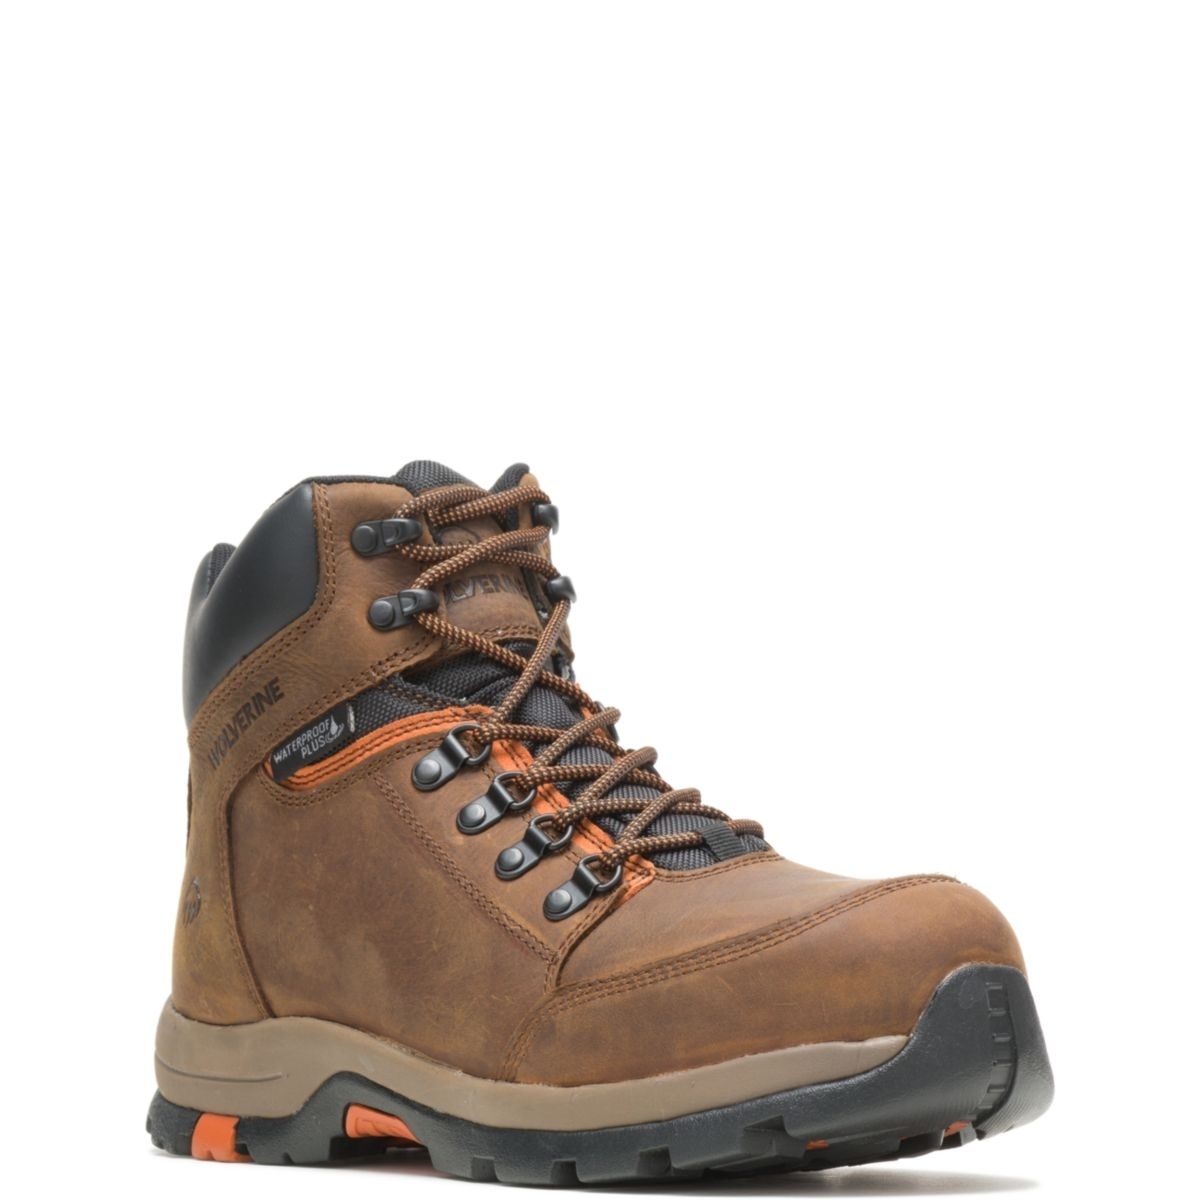 WOLVERINE Men's Grayson Steel Toe Waterproof Work Boot Brown - W211043 BROWN - BROWN, 13